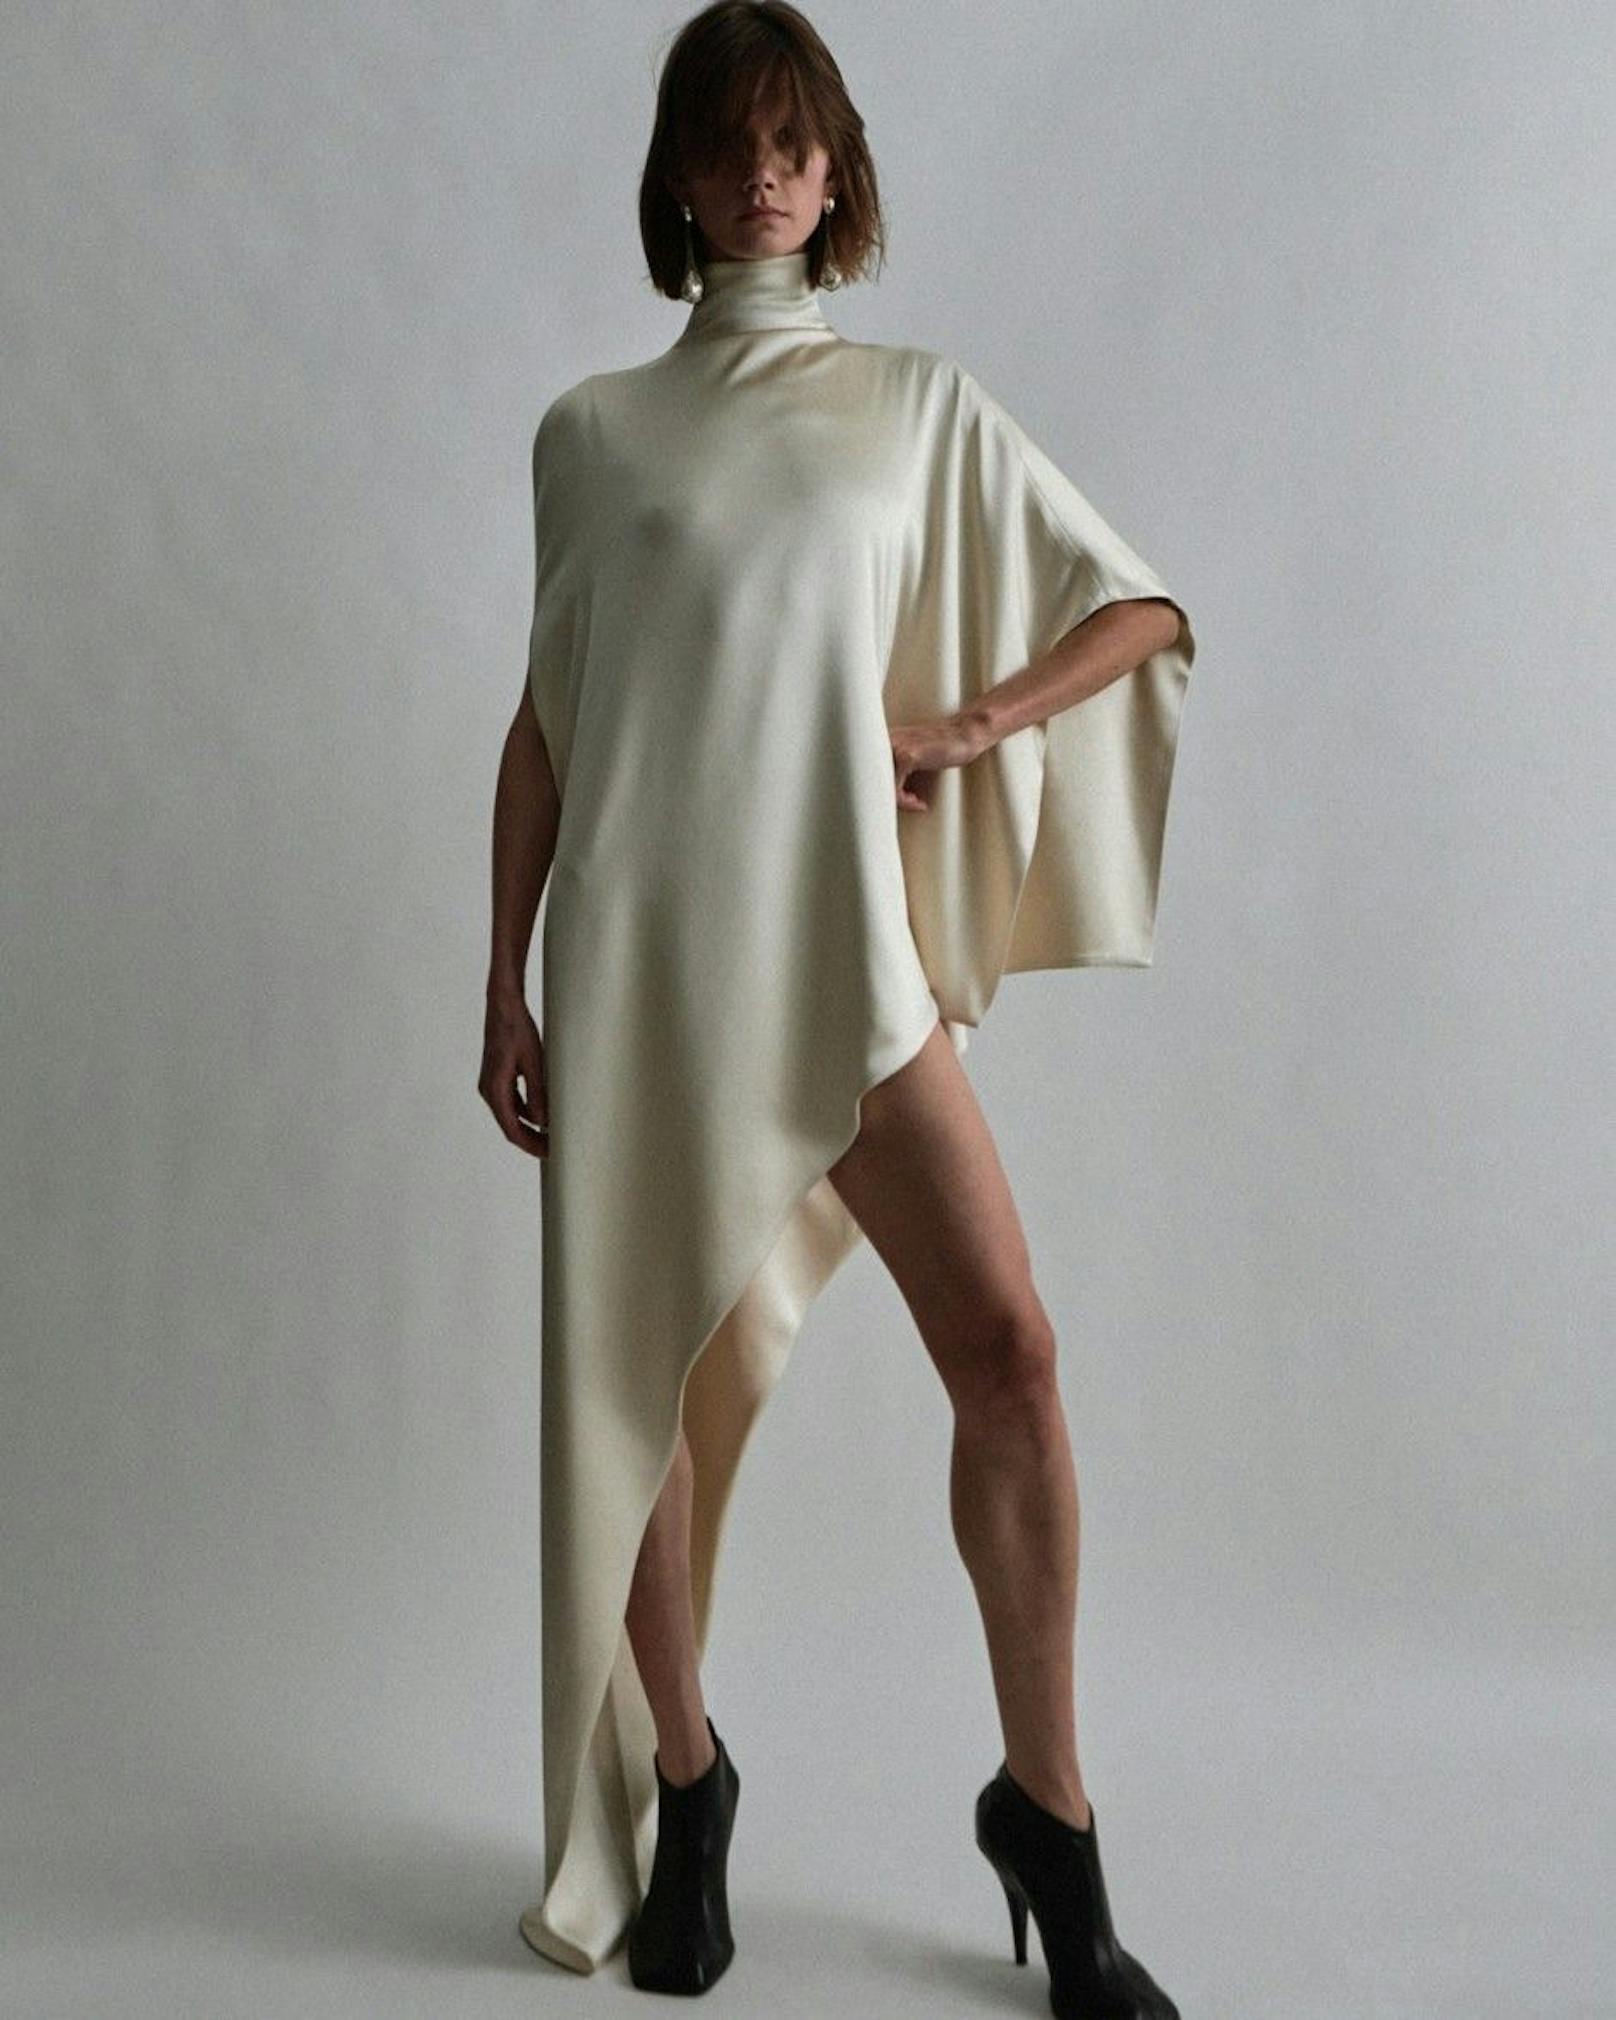 Phoebe Philo zeigt ihre Mode nicht auf dem Runway, sondern erstmal nur online. Die ersten 150 Teile verkauft sie als "Drop" auf ihrer Website. Darunter Zottel-Jacken und weit geschnittene Blazer aus luxuriösen Materialien.